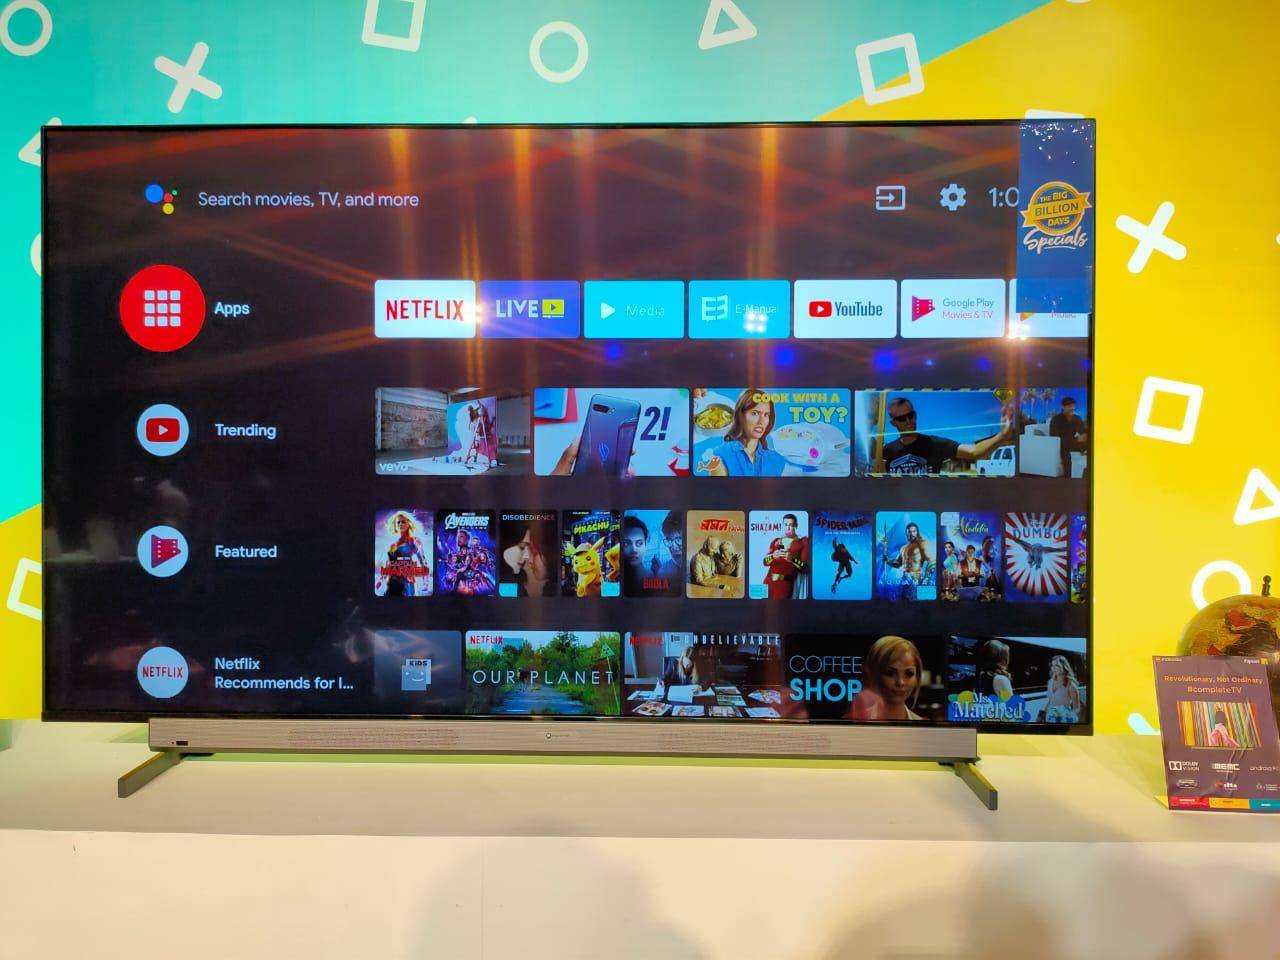 मोटोरोला 75 इंच वाला 4K UHD स्मार्ट टीवी भारत में जल्द करेगी  लॉन्च 